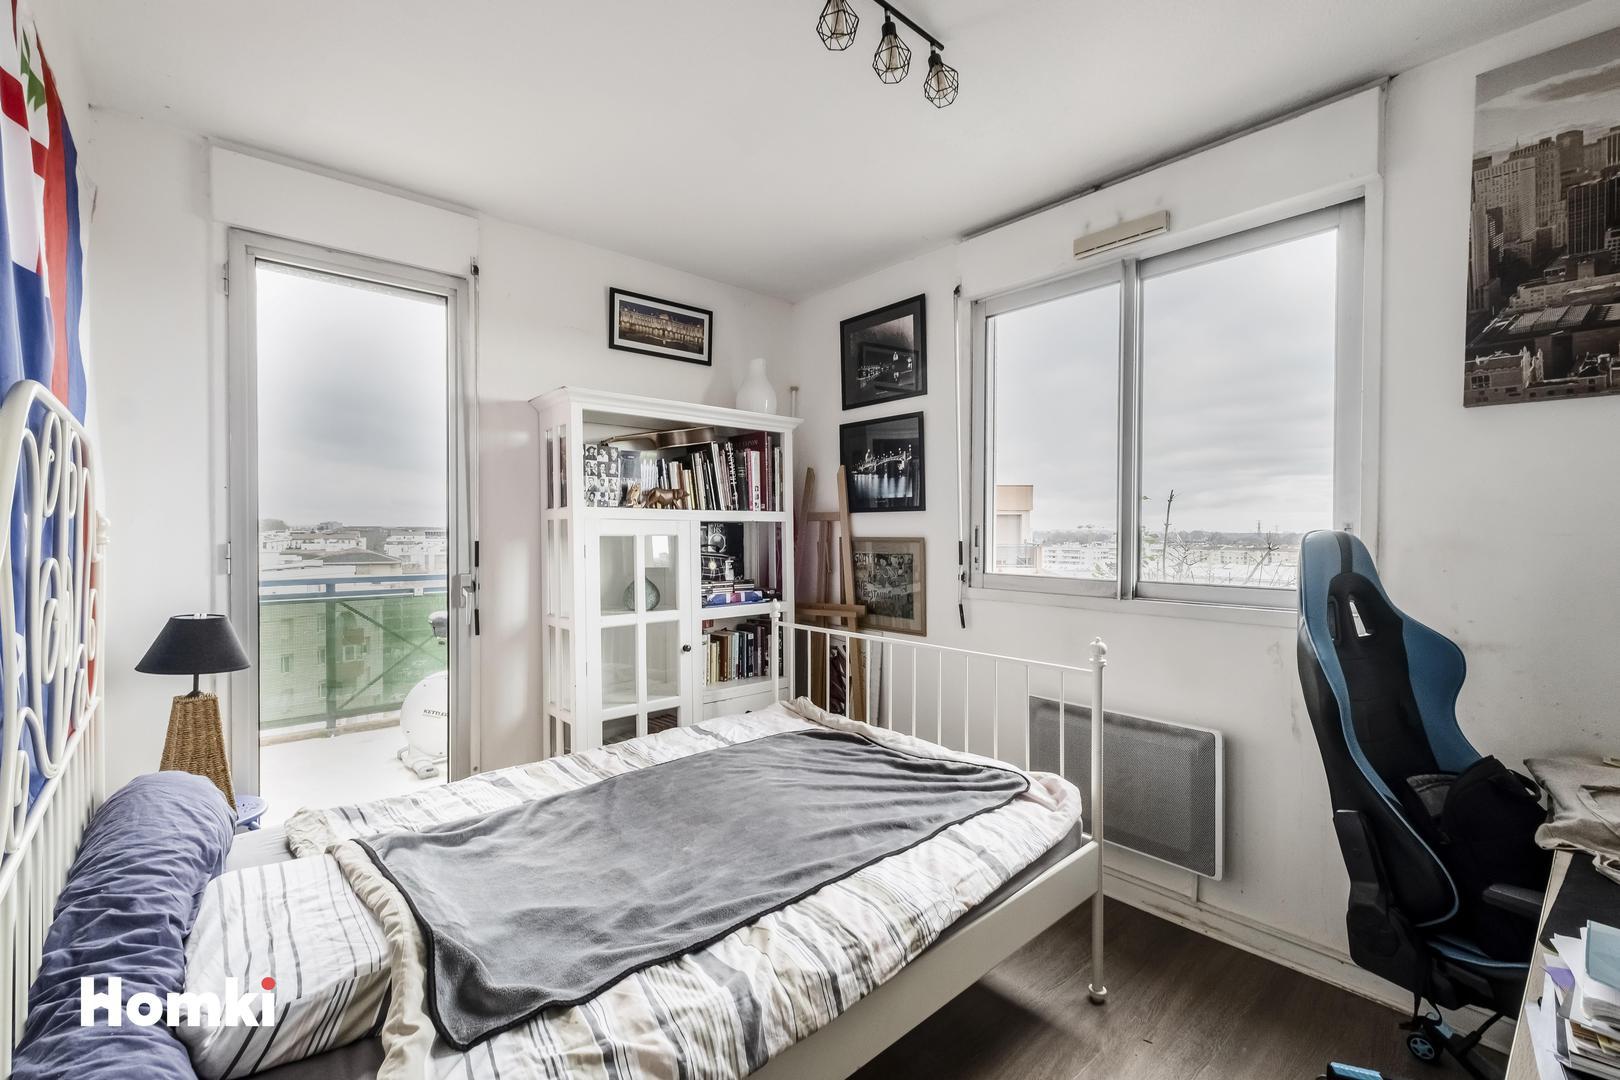 Homki - Vente Appartement  de 64.0 m² à Toulouse 31200